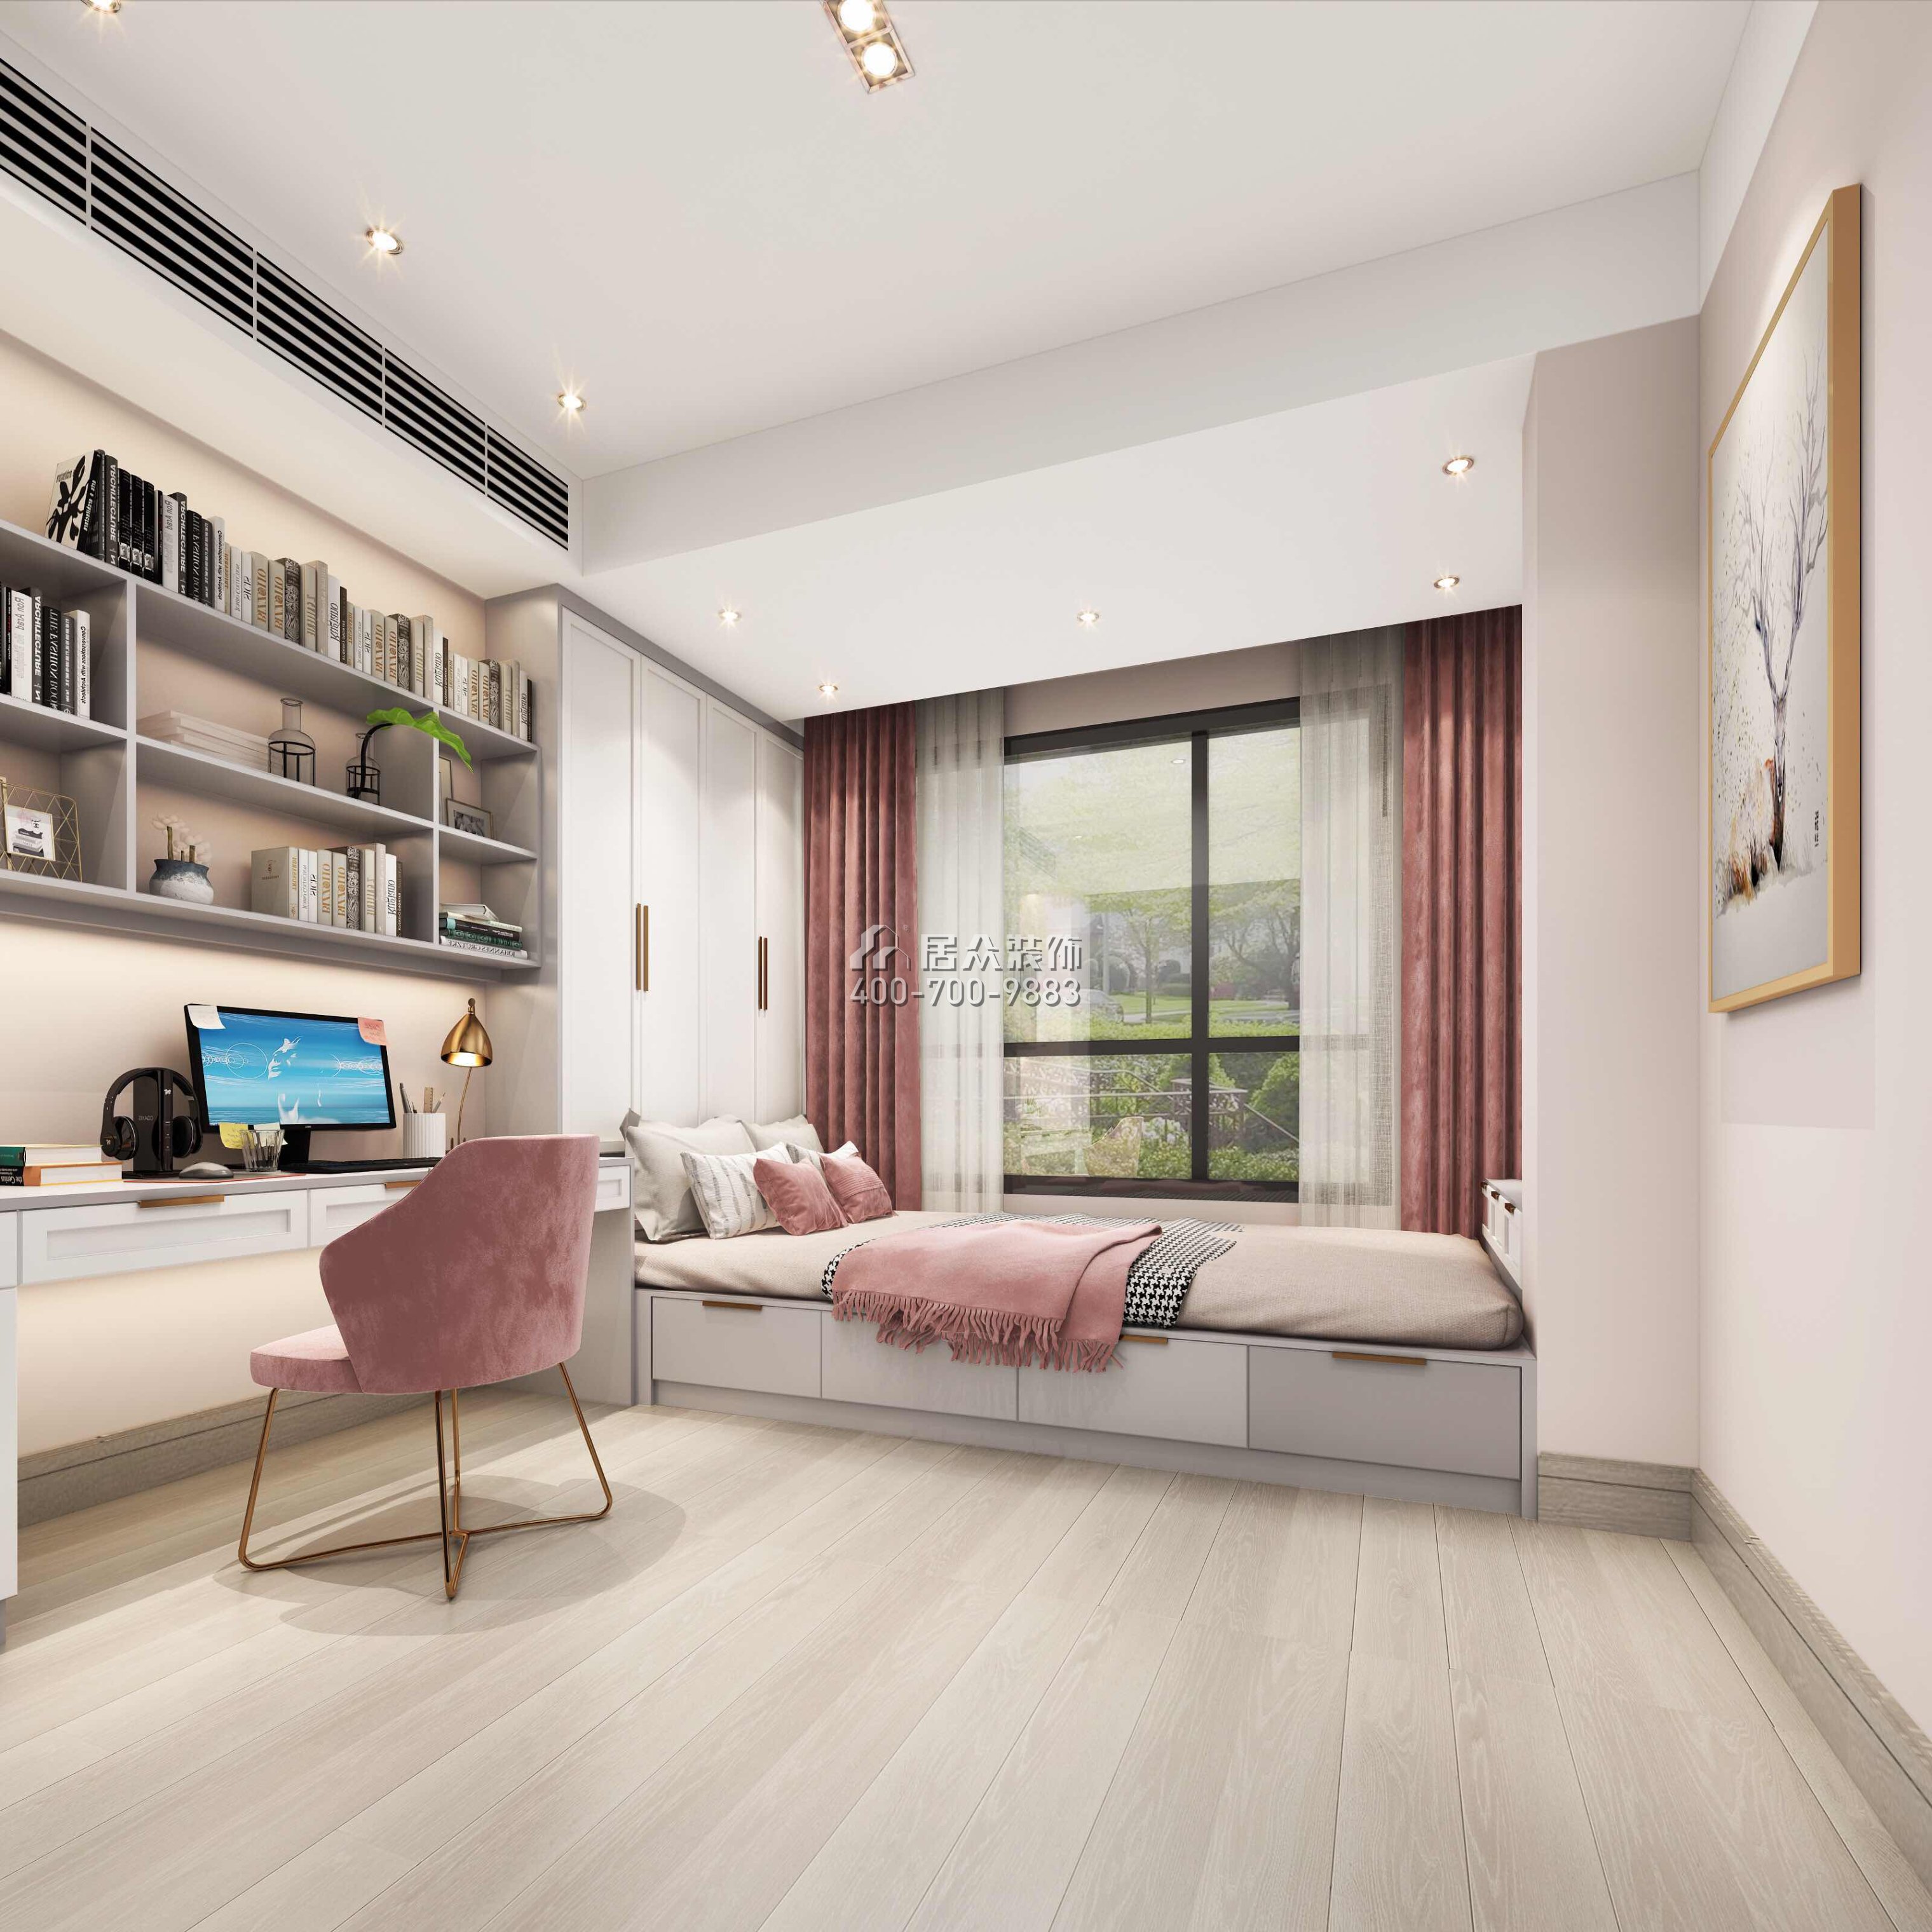 達鑫江濱新城250平方米現代簡約風格平層戶型臥室書房一體裝修效果圖